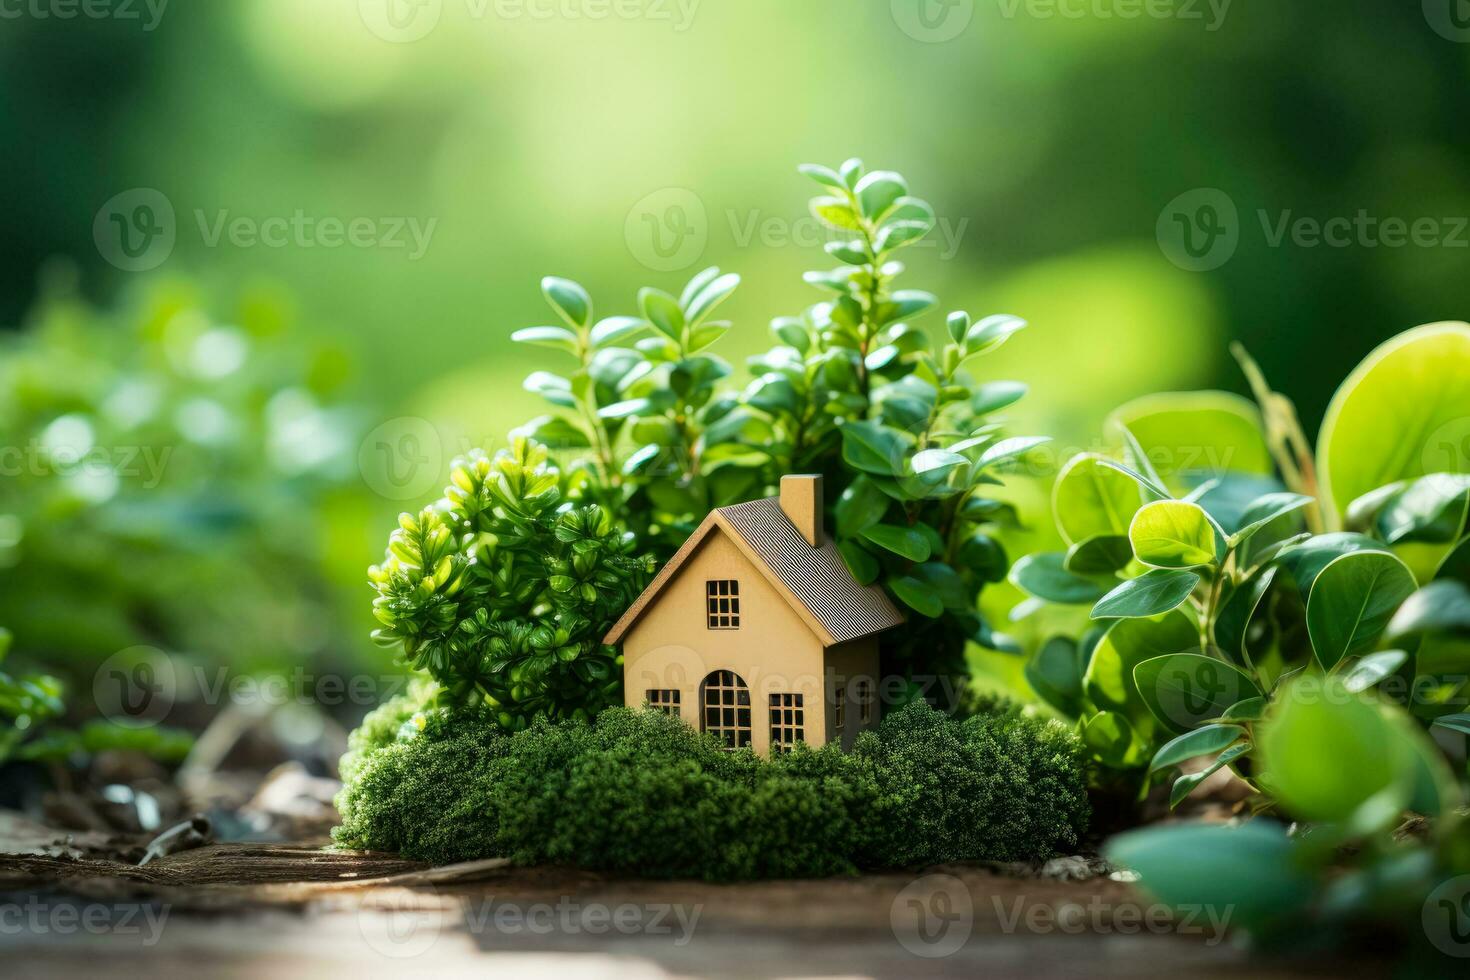 miniatyr- eco hus belägen i en grön miljö på gräs foto